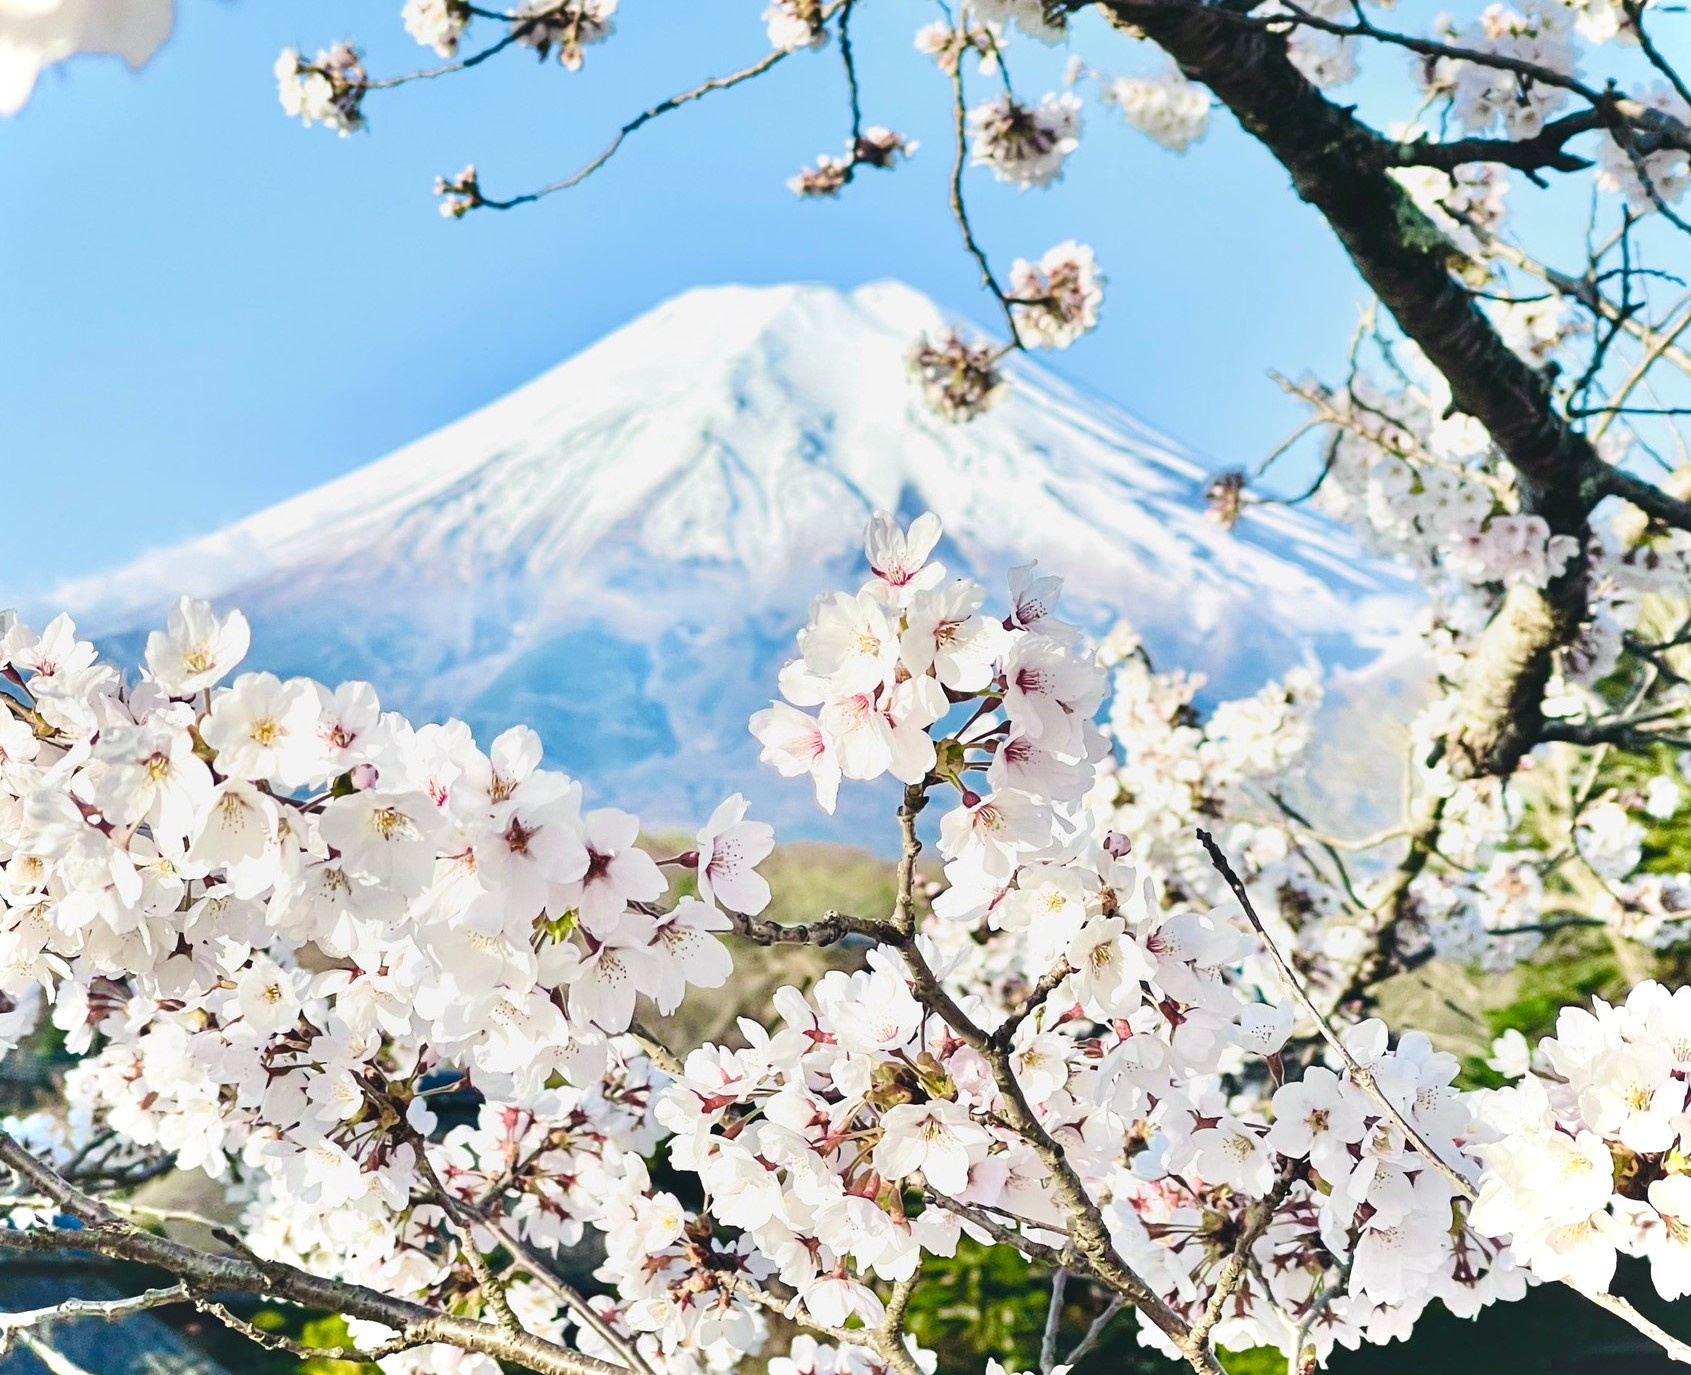 Hoa anh đào là biểu tượng văn hoá đẹp của Nhật Bản, truyền thống này còn rộng rãi được áp dụng trong nhiều quốc gia khác. Hãy cùng ngắm nhìn những tán hoa đào nở rộ trên đất nước hoa anh đào xinh đẹp này.